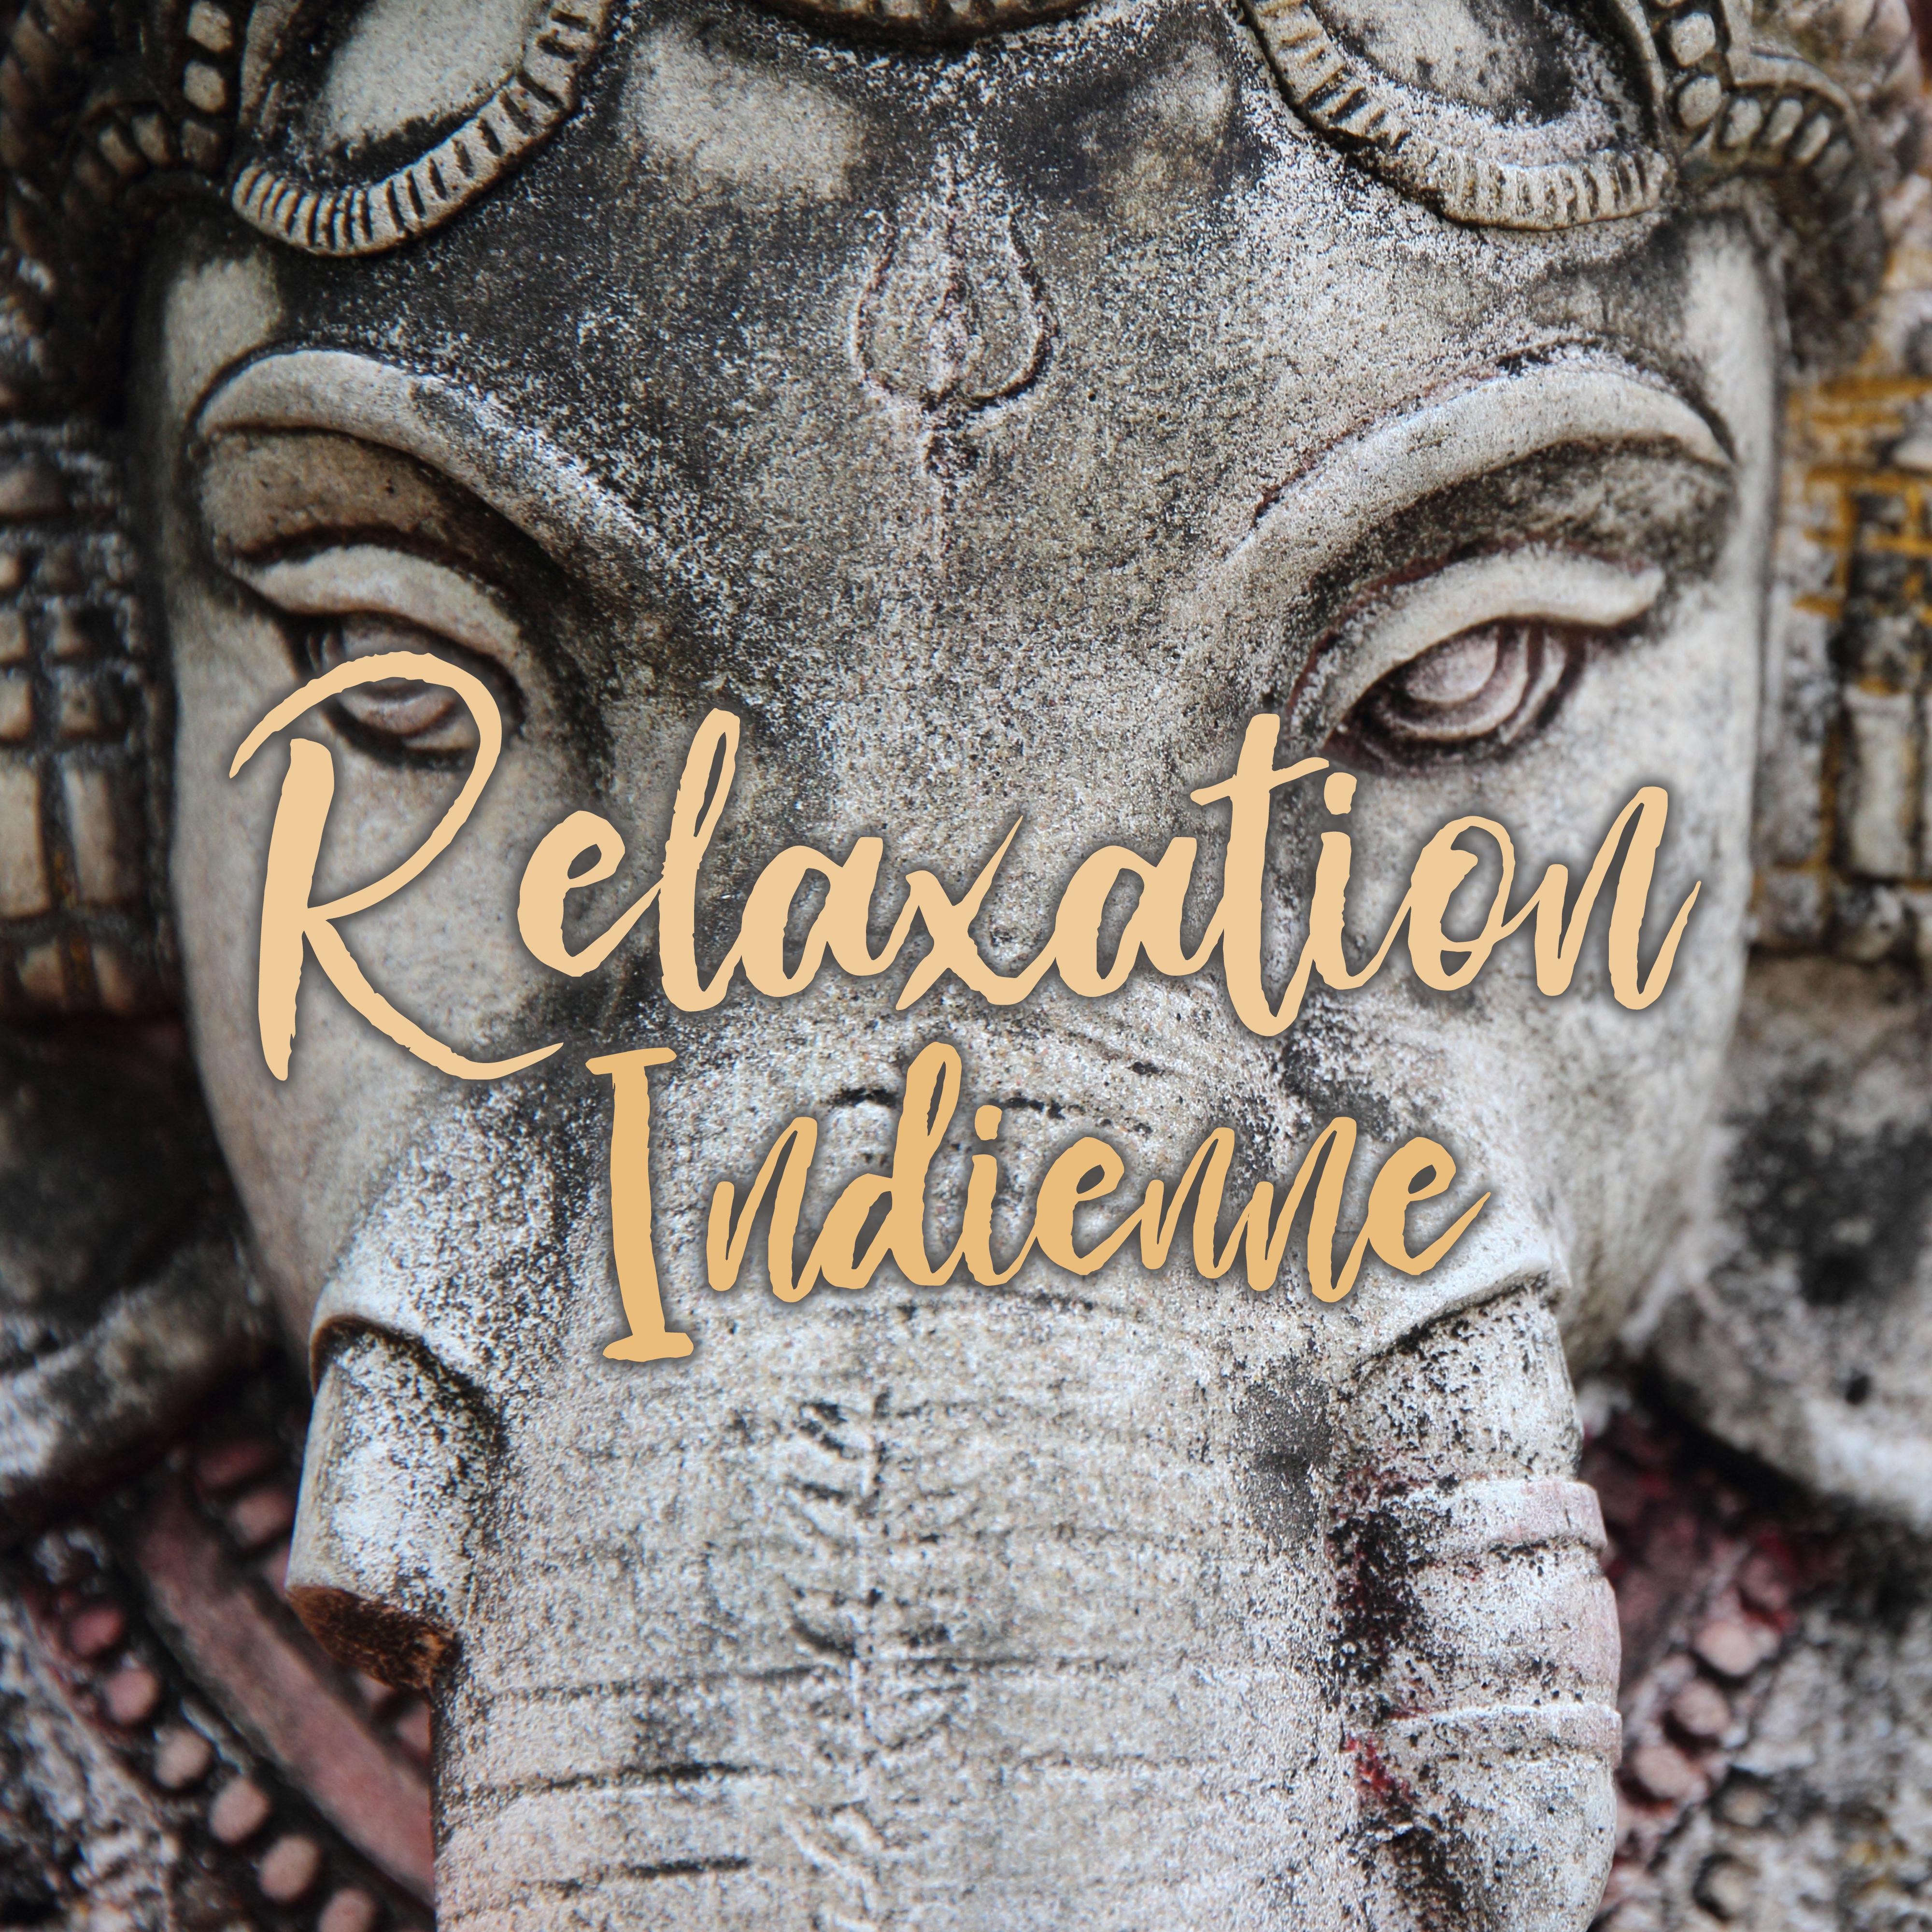 Relaxation Indienne - Détendez-vous avec des sons orientaux d'Extrême-Orient